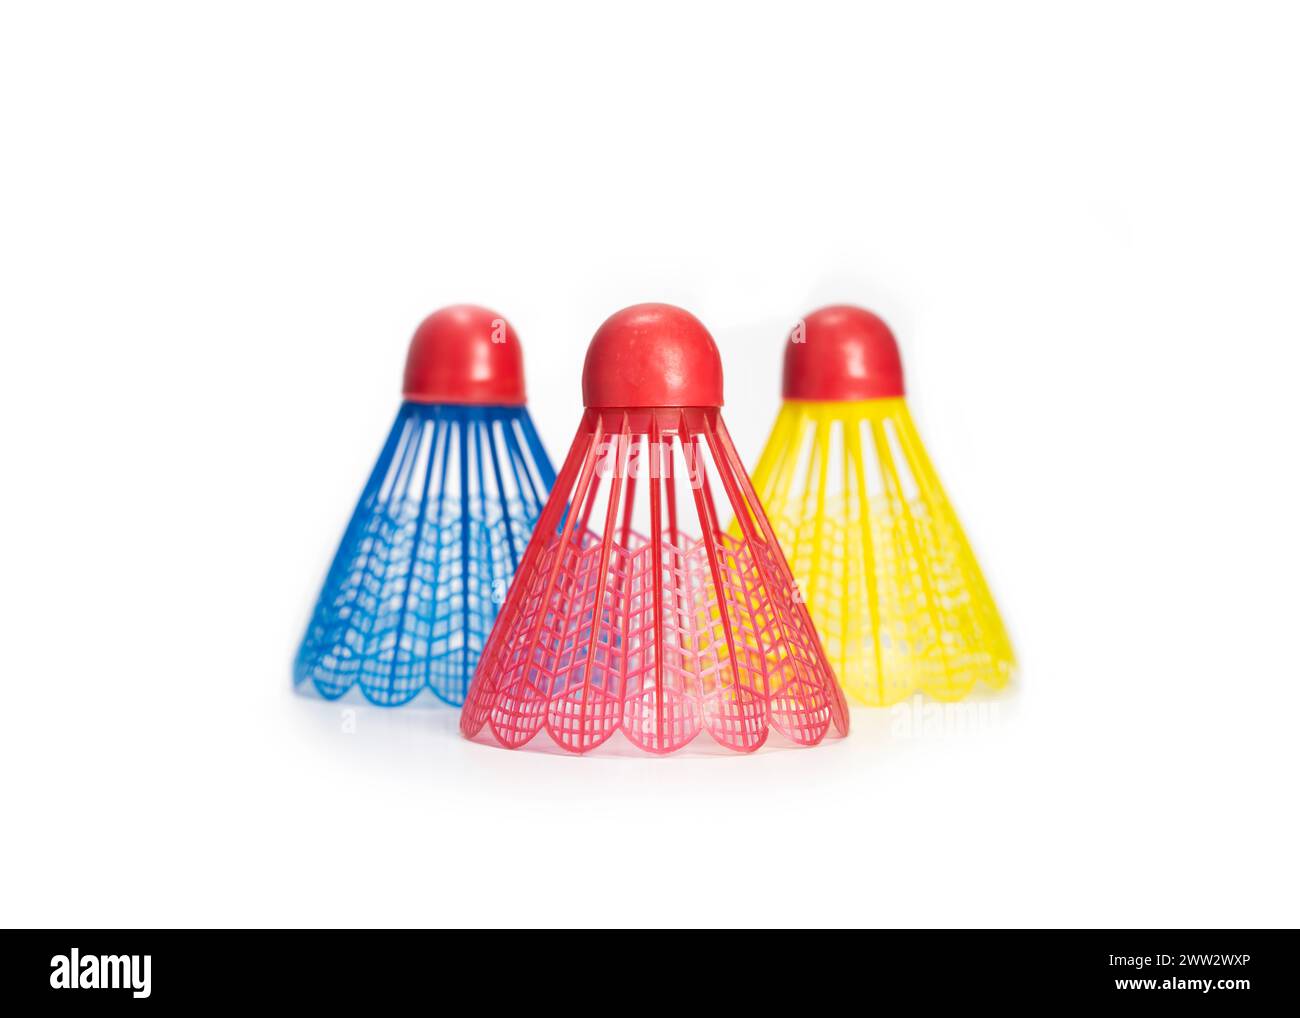 Sfere di Badminton in plastica rossa, blu e gialla (rubinetti), isolate su sfondo bianco Foto Stock